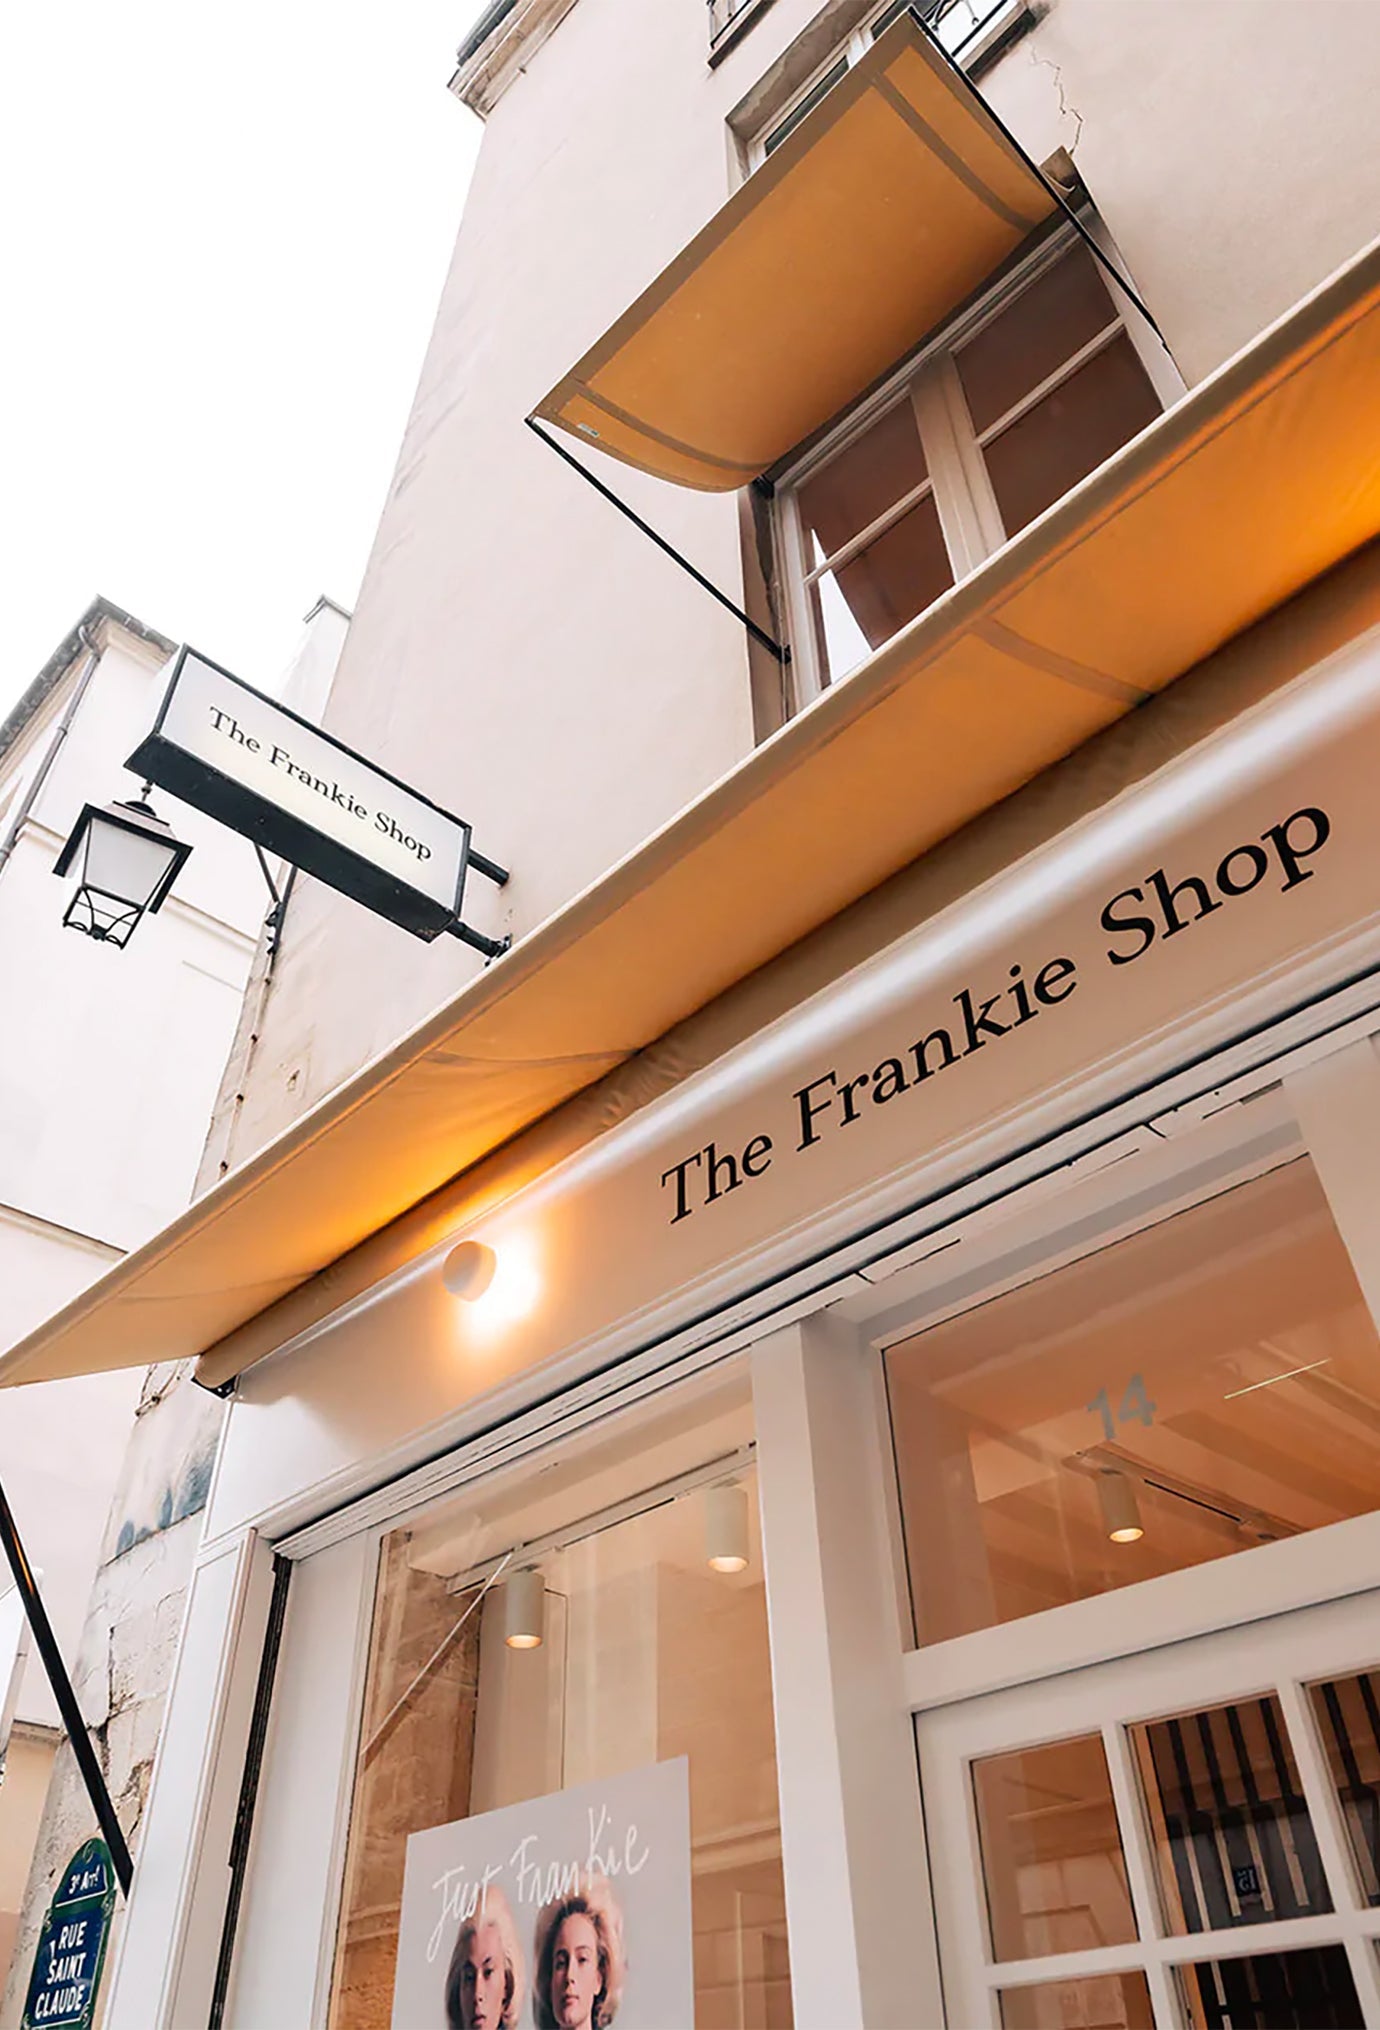 The Frankie Shop takes over the Rue Saint-Claude, Paris